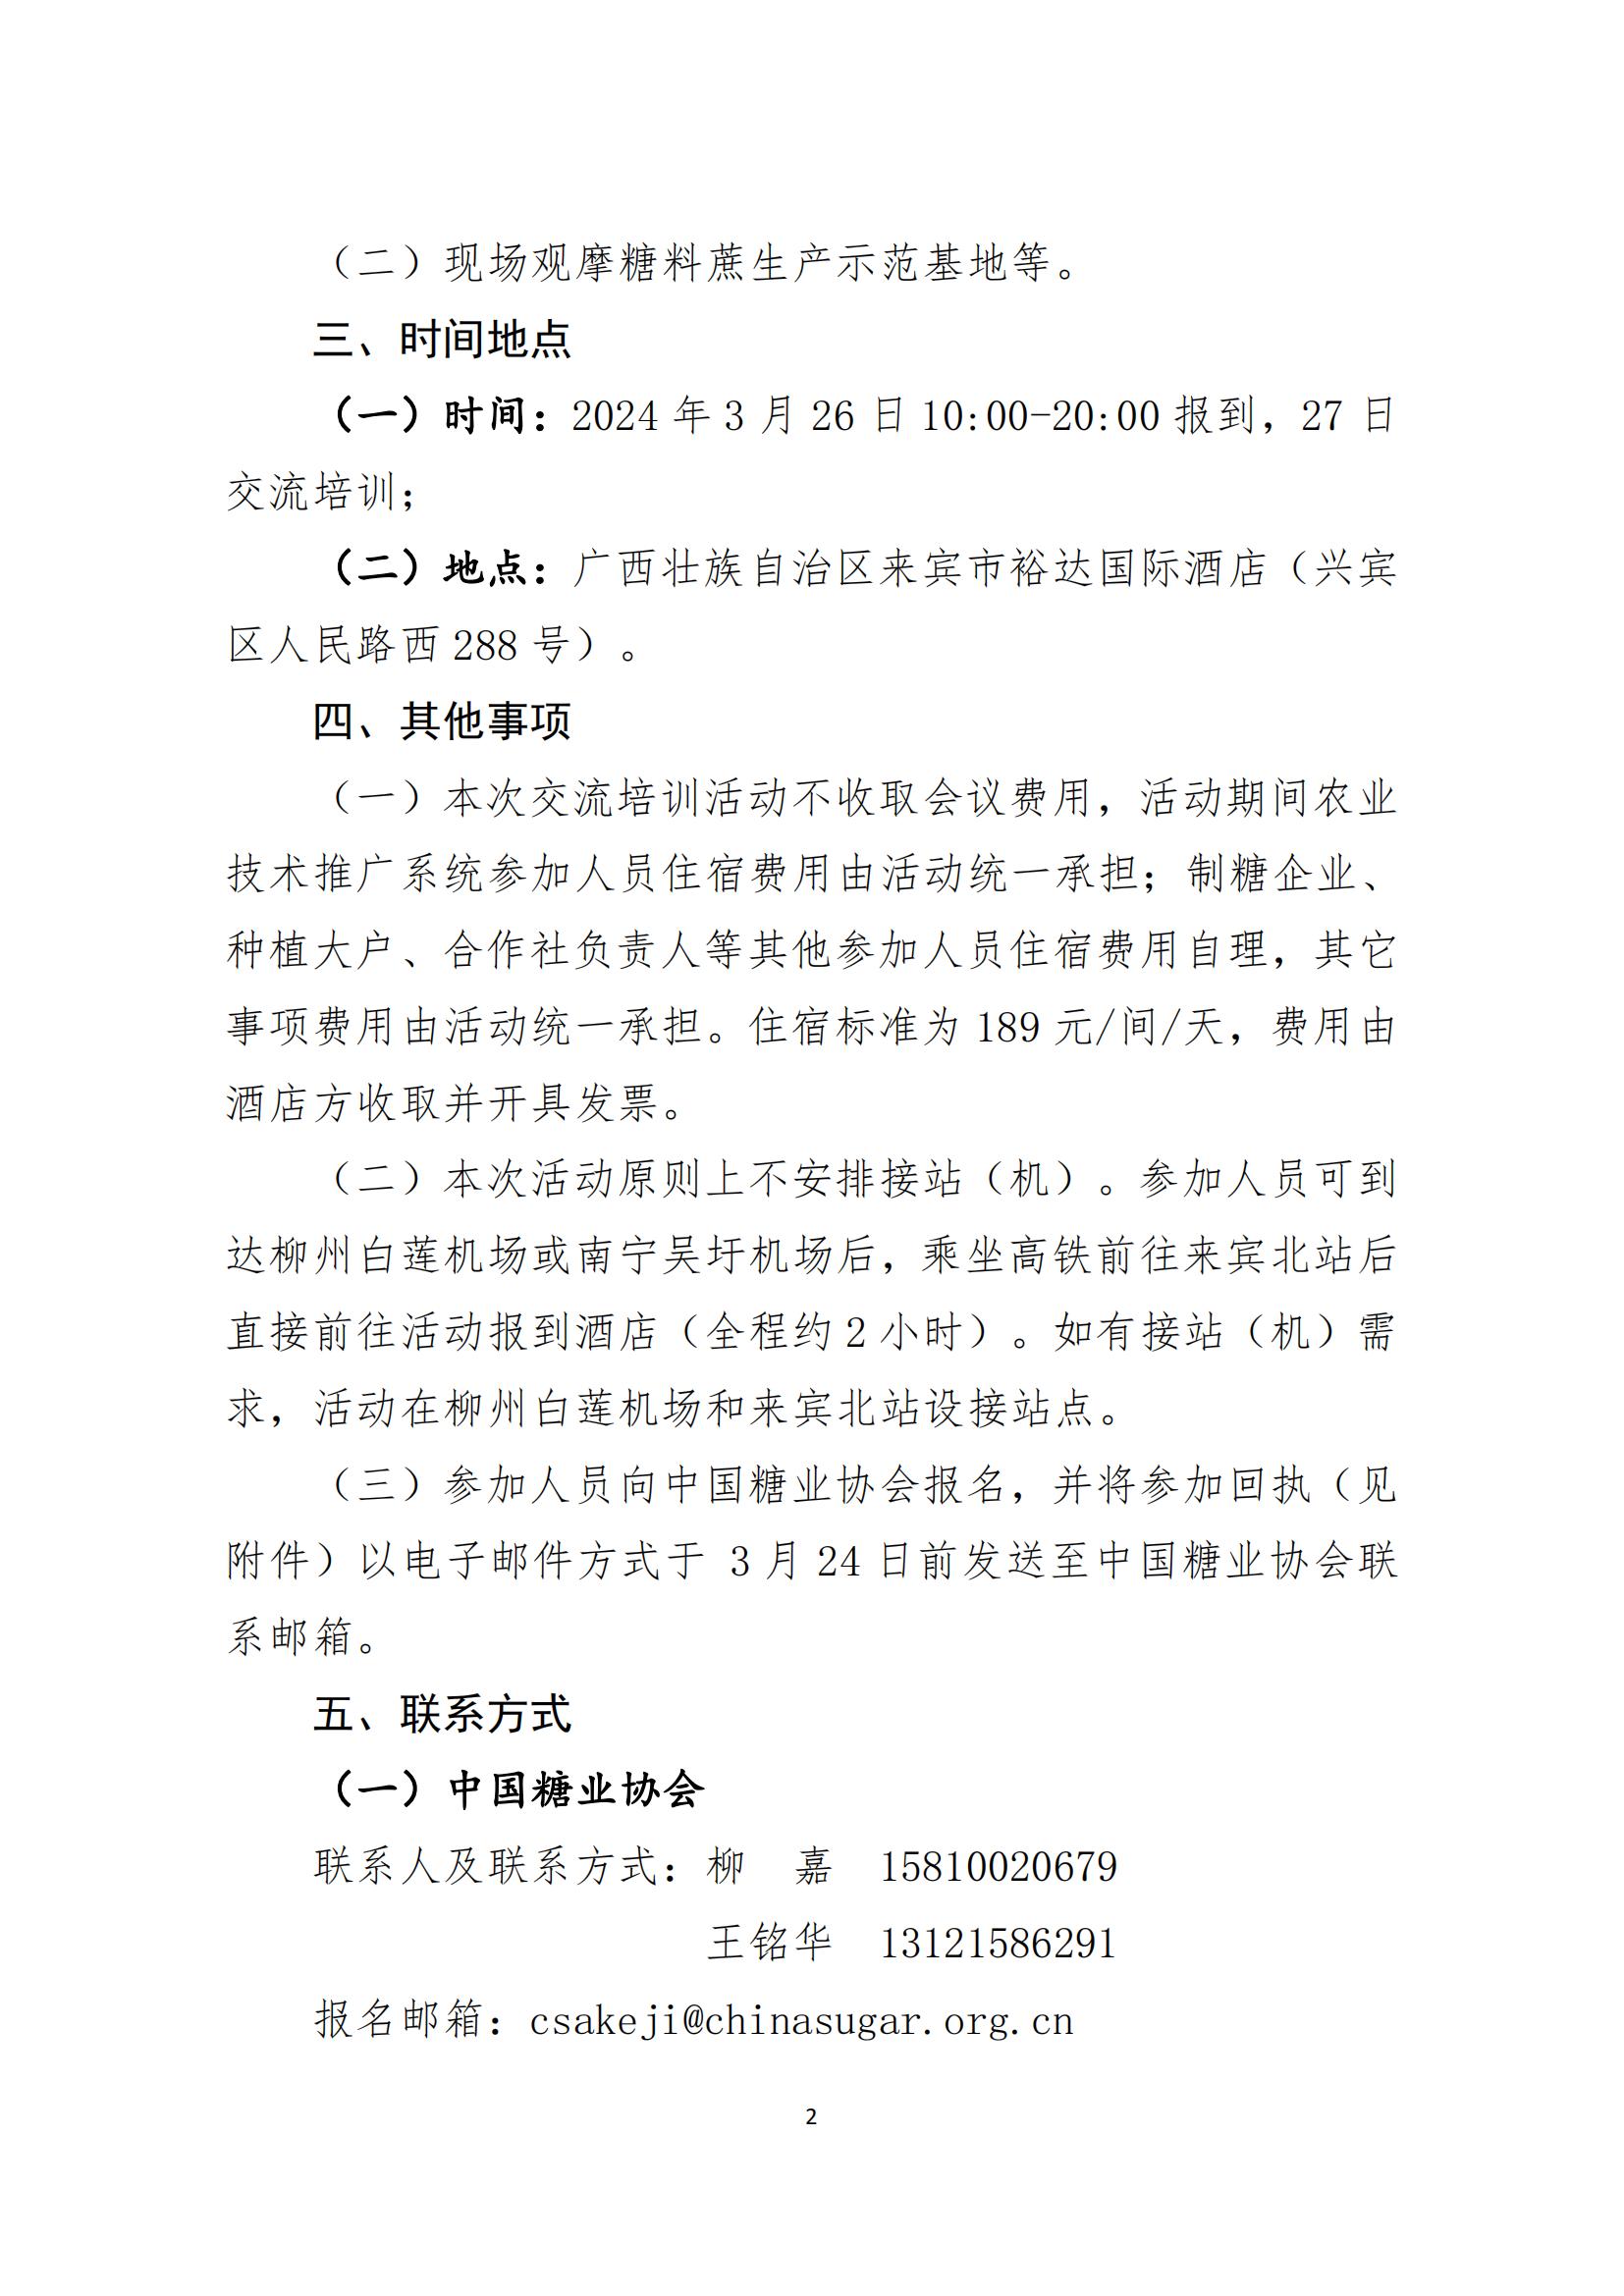 新葡新京8883关于组织开展糖料种植技术培训活动的通知（终版）(3)(1)(2)_00.jpg